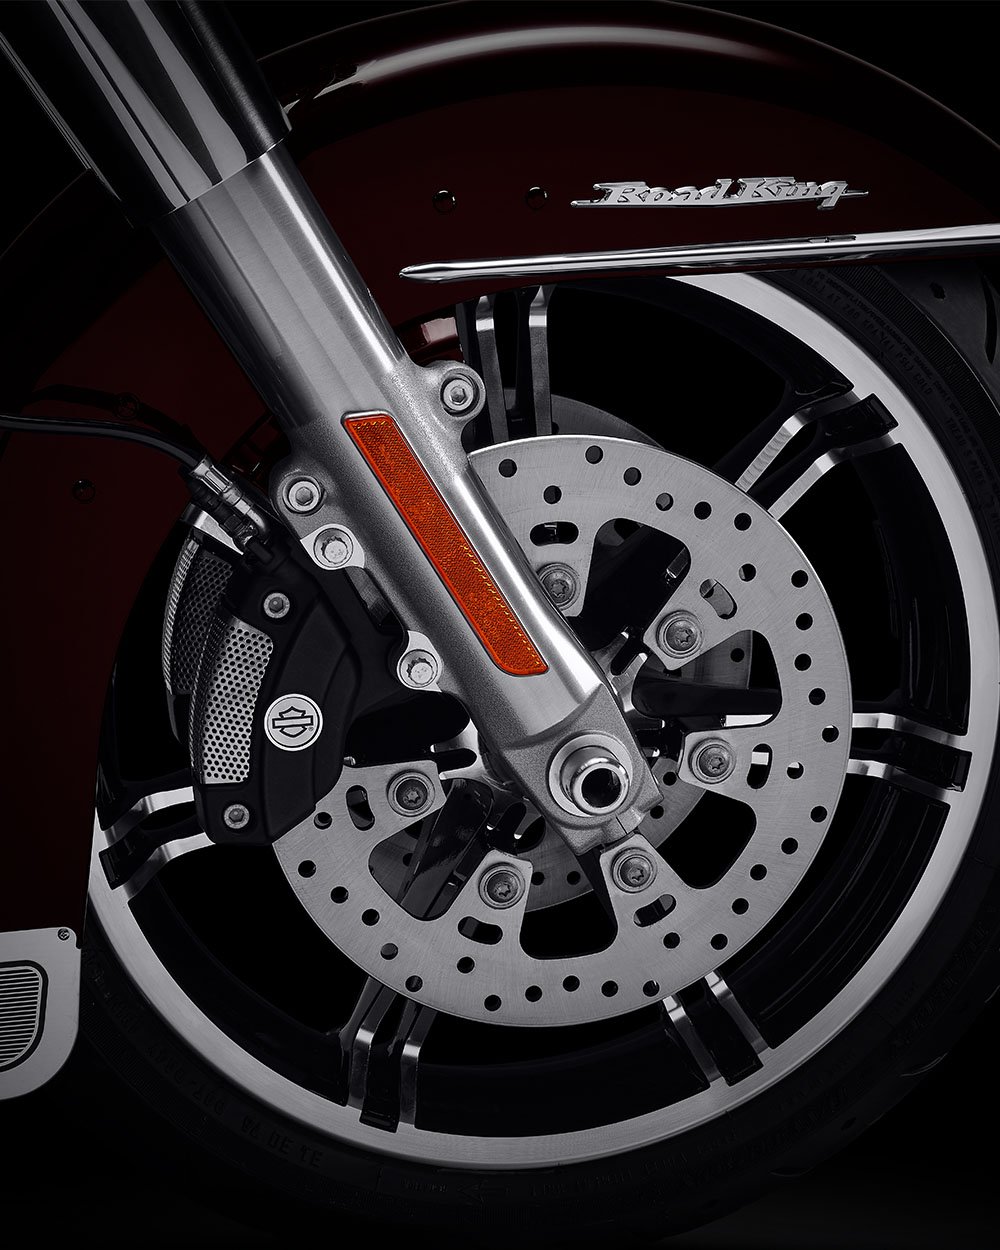 Propojené brzdy Reflex Brembo s volitelným systémem ABS motocyklu Road King 2022